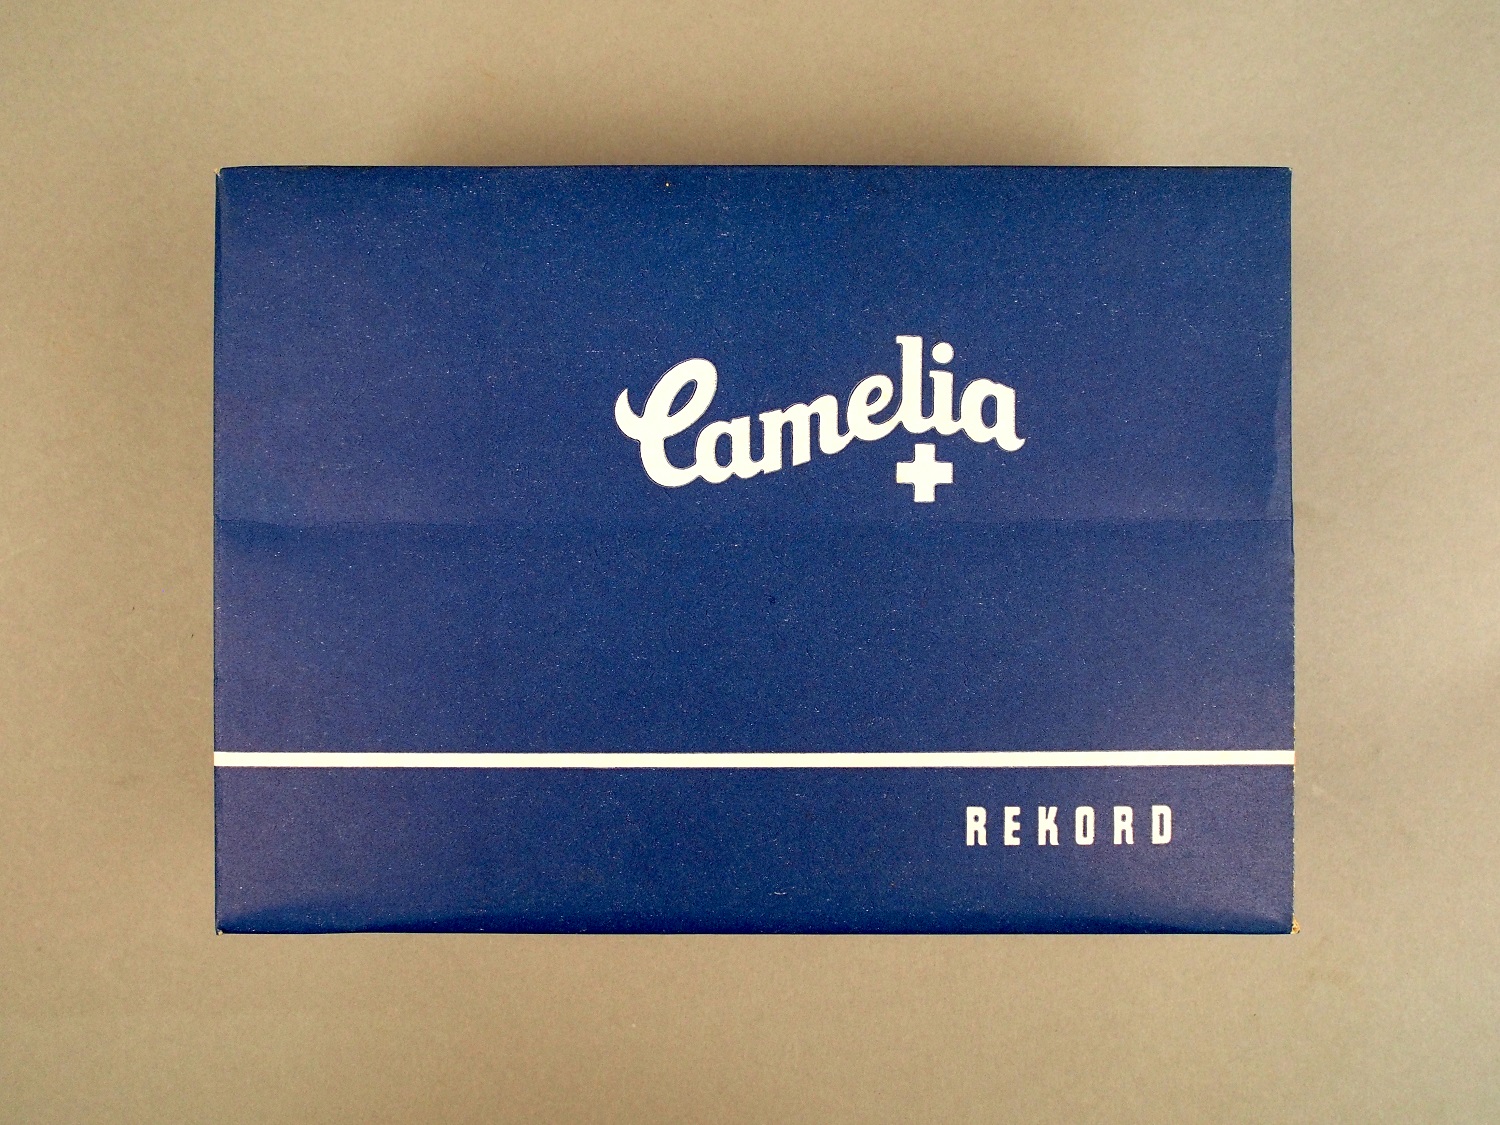 Die Packung ist blau. Auf ihr steht "Camelia". Die Schrift ist weiß. In der Packung sind Damenbinden.